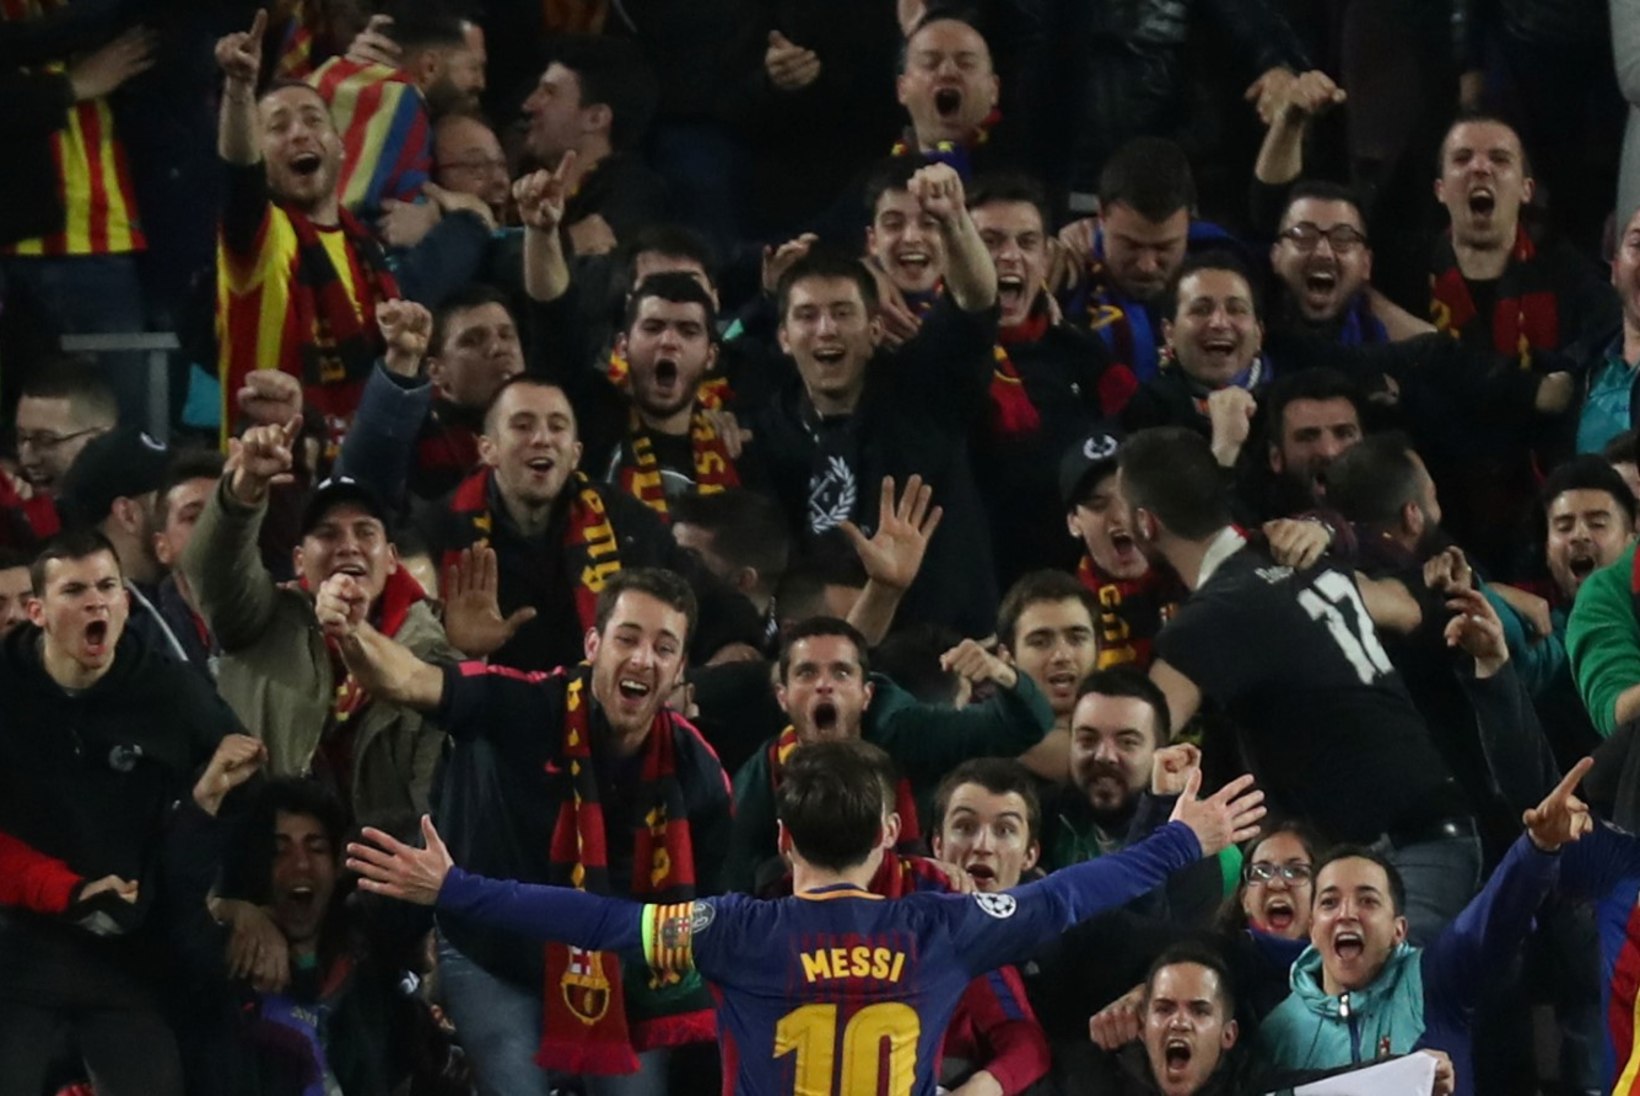 GALERII | Rekordiliselt kiire värava löönud Lionel Messi jõudis Cristiano Ronaldoga samasse seltskonda, Barcelona murdis kindlalt kaheksa hulka